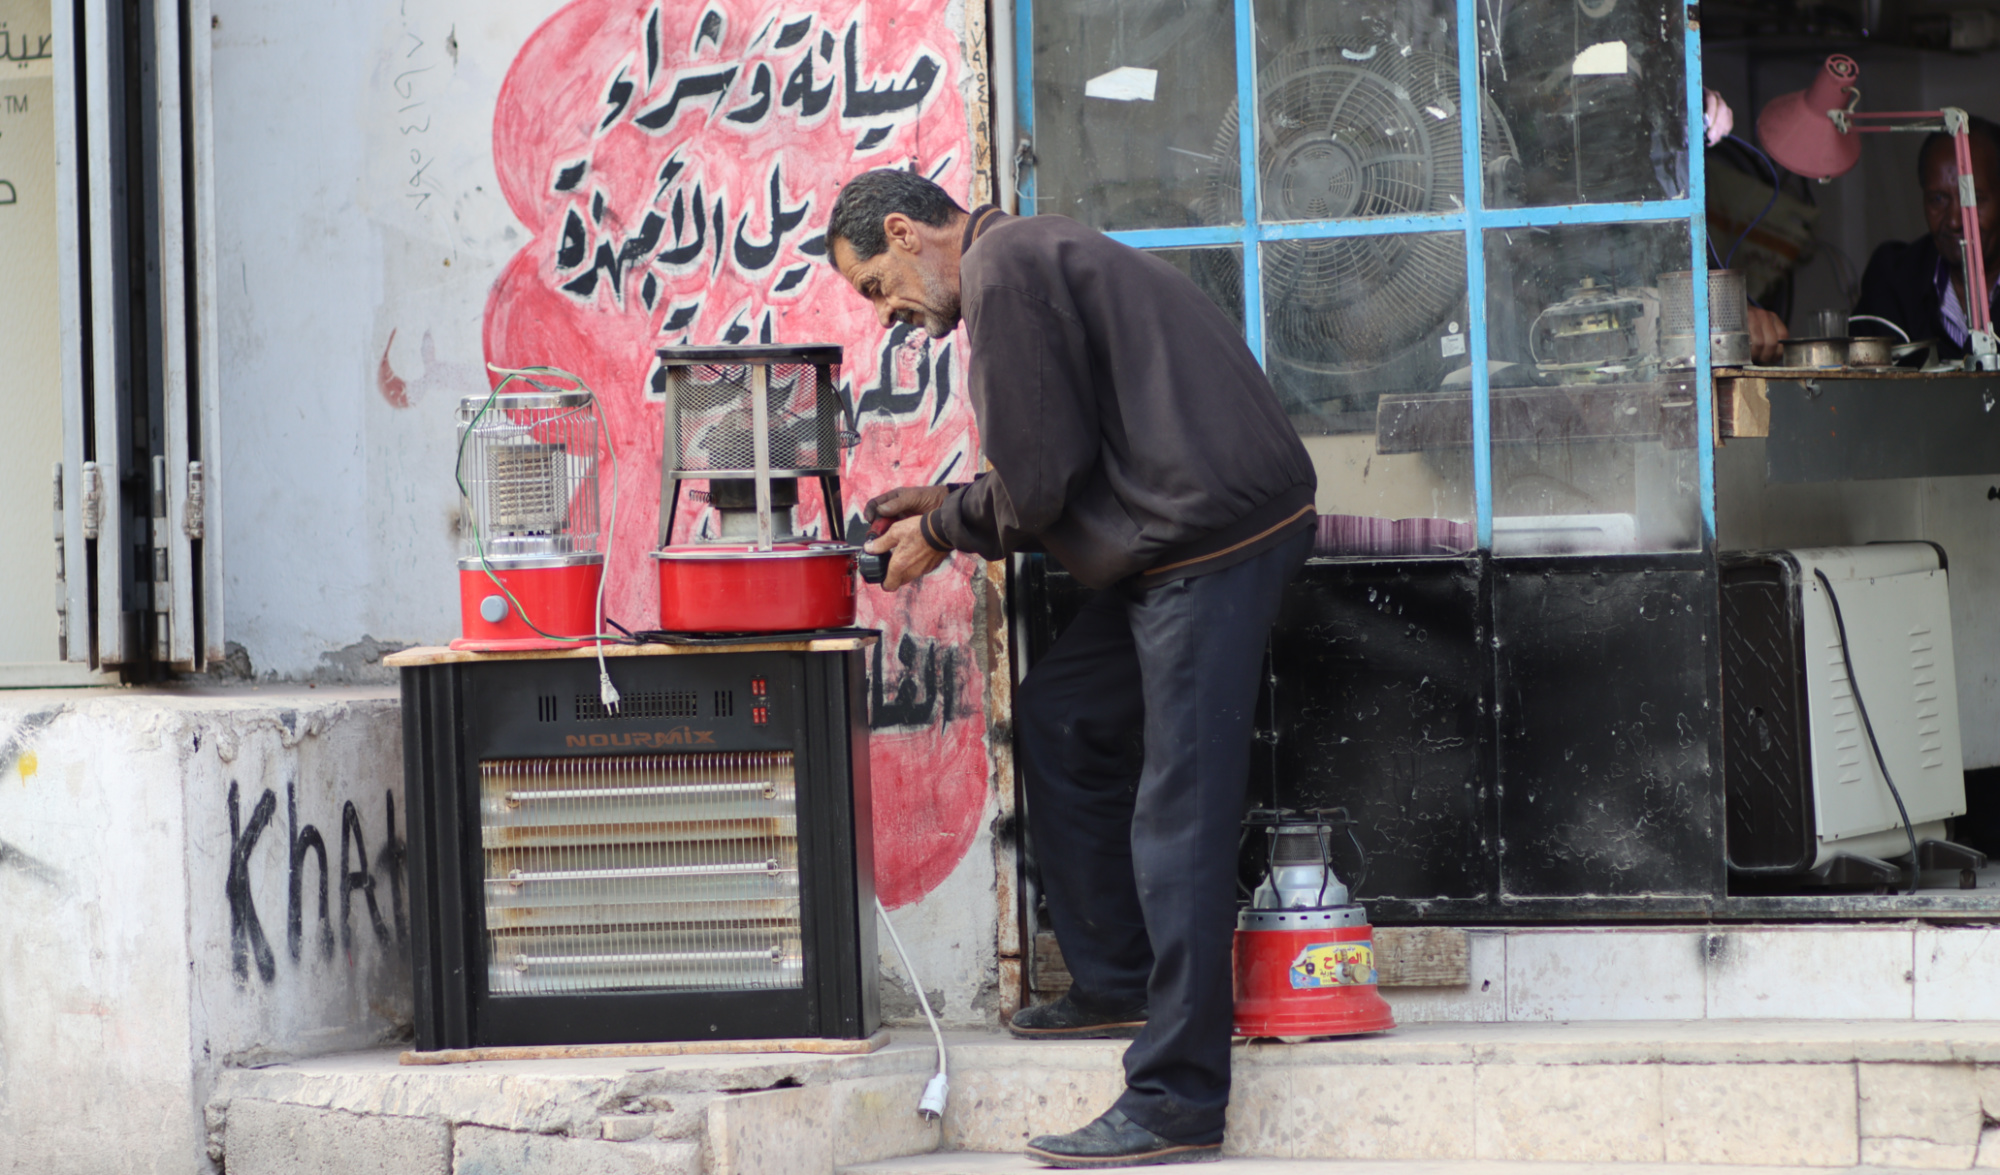 A man repairs kerosene heaters in the city of Irbid, Jordan (MEE/Mohammad al-Daoum)